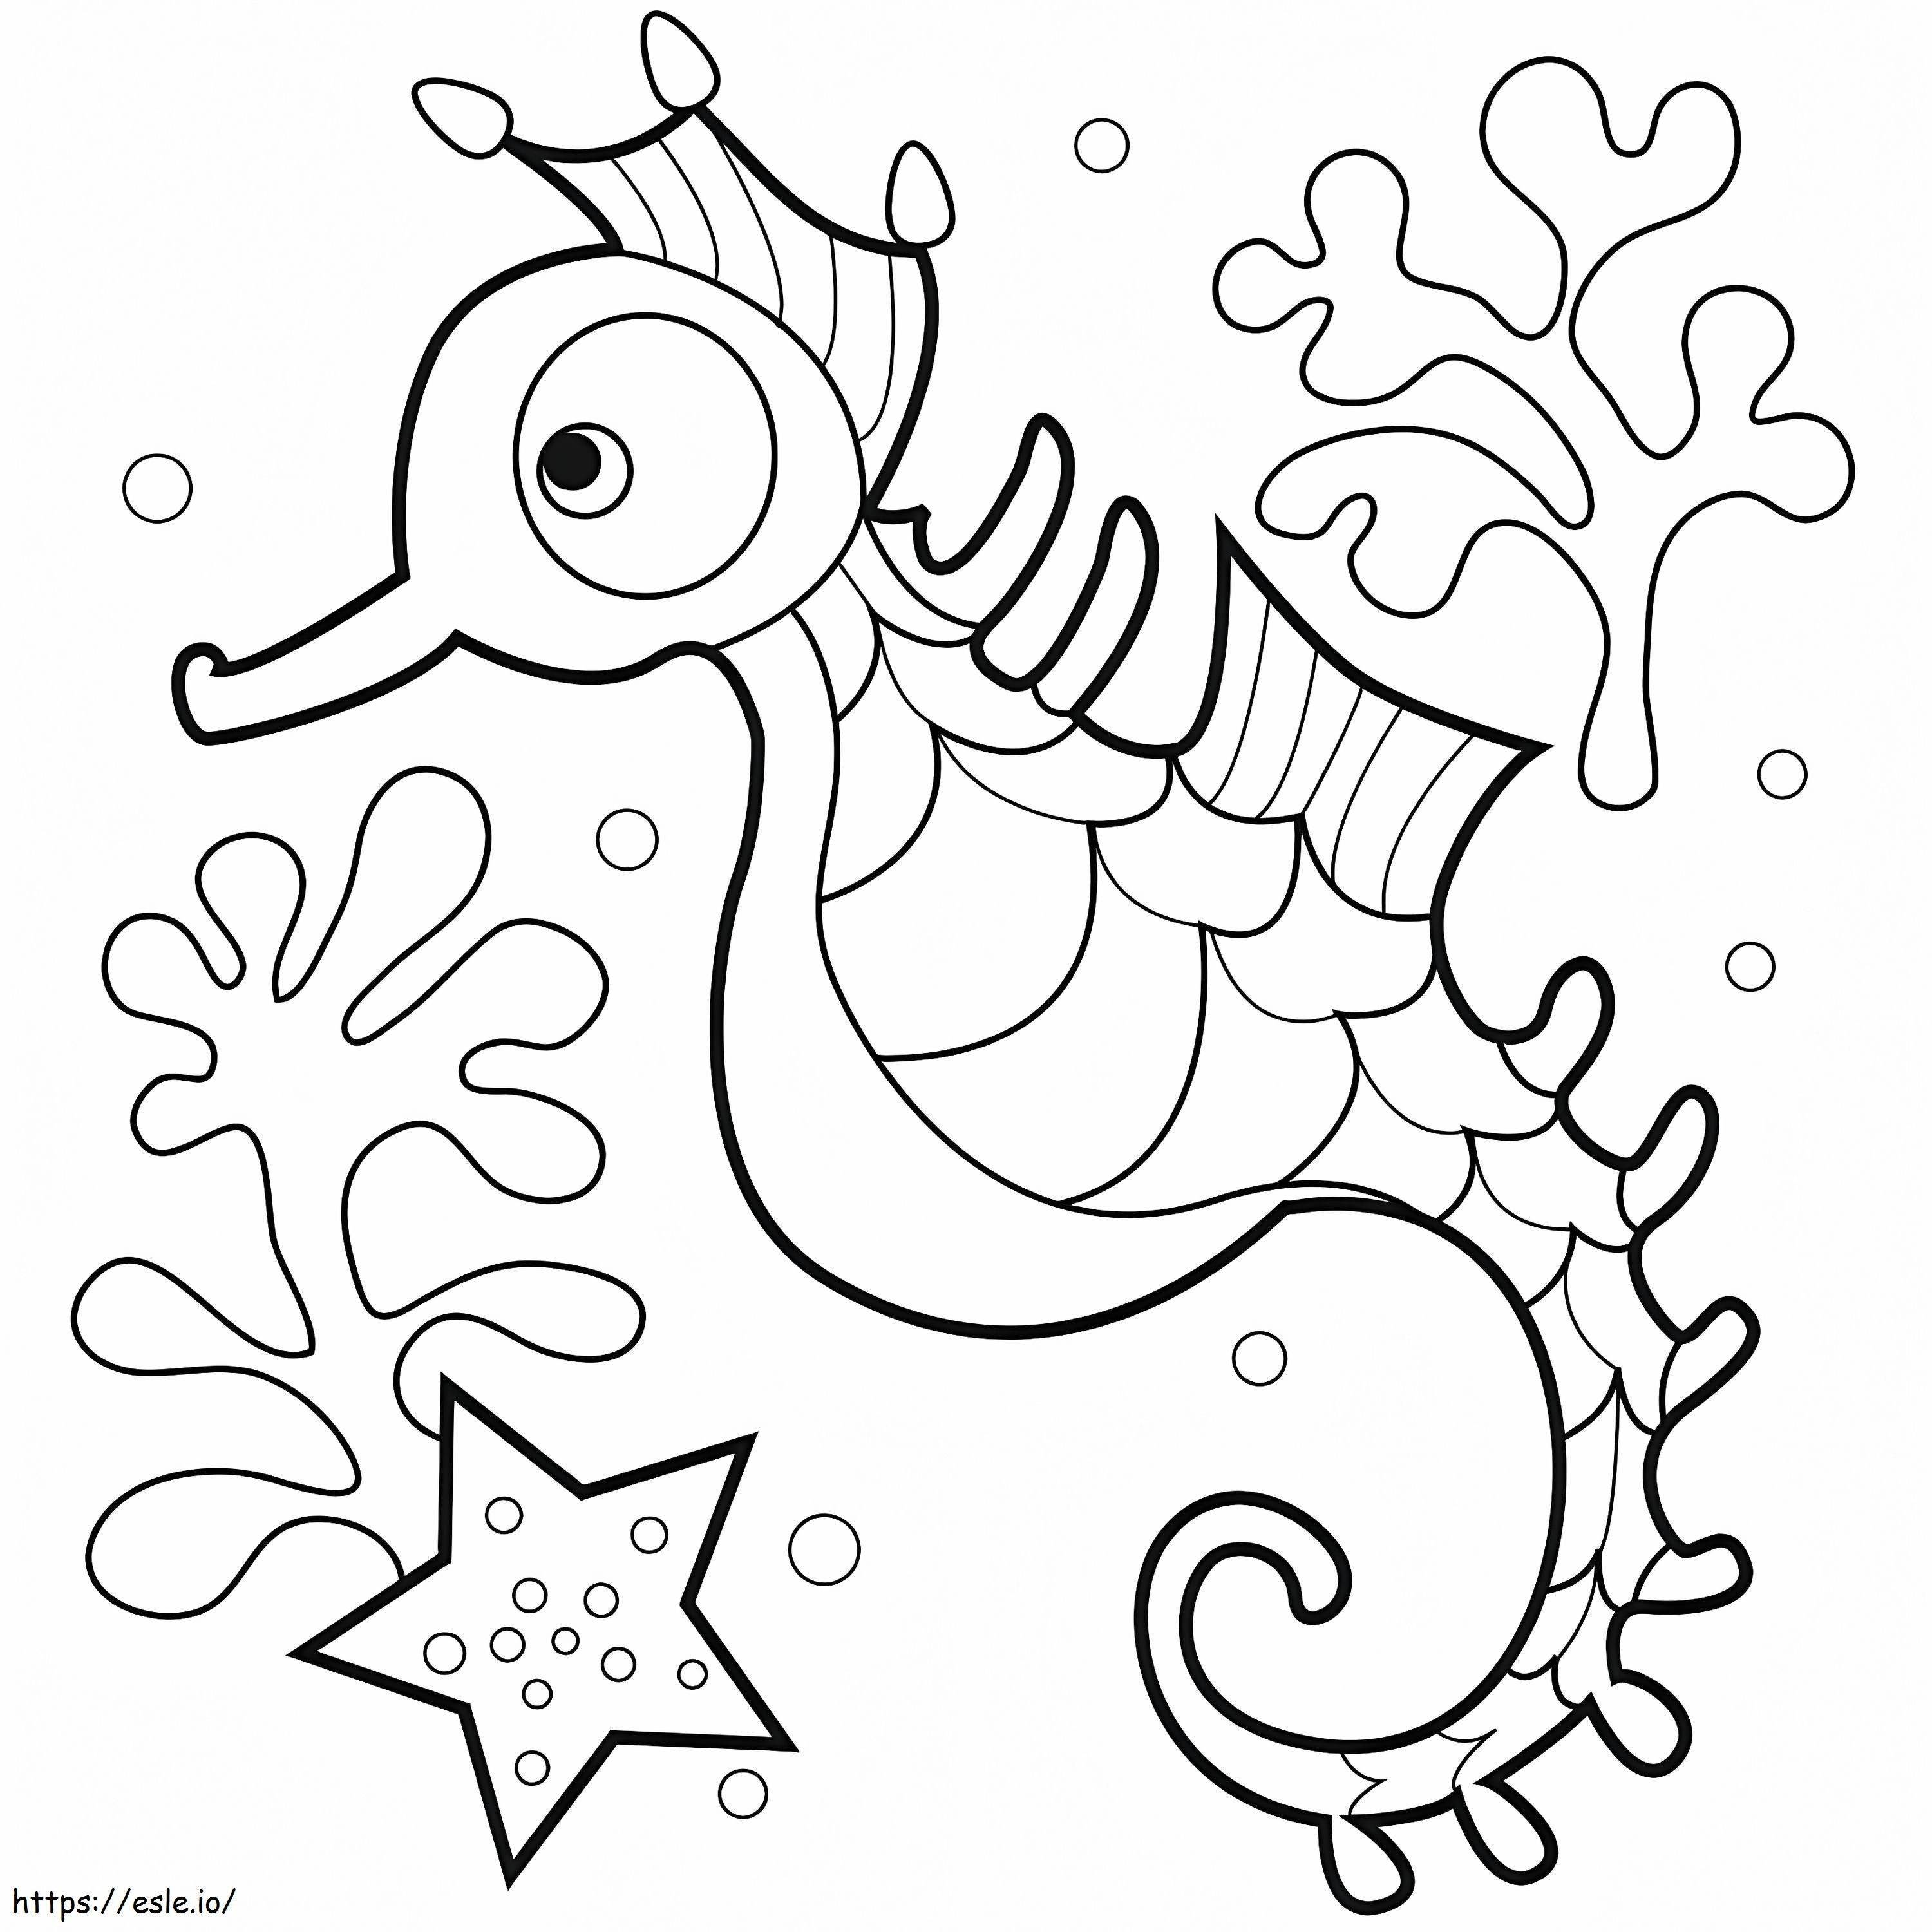 Adorable Seahorse coloring page